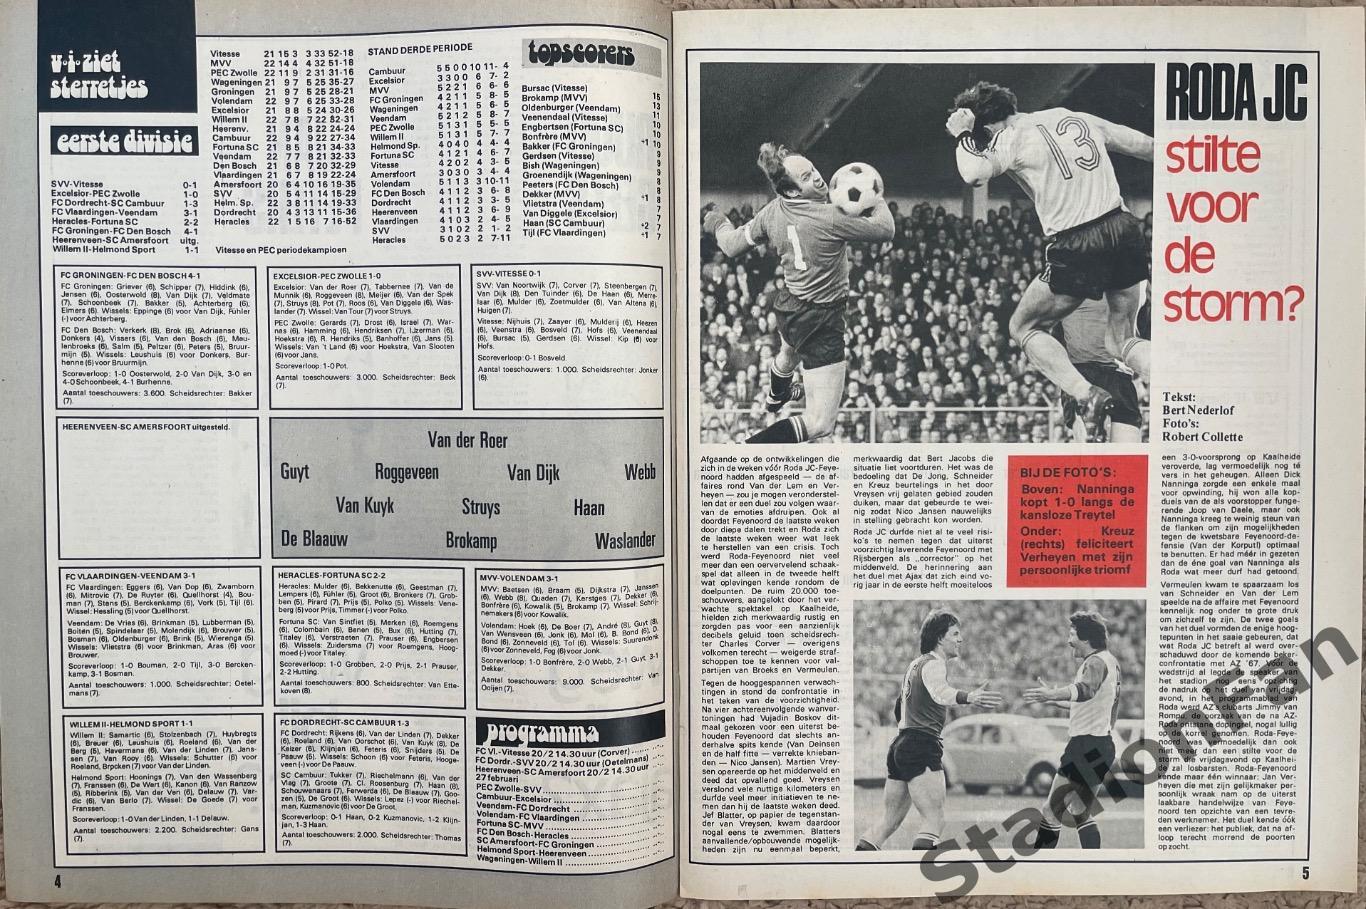 Журнал Voetbal nr.7 - 1977 год. 4